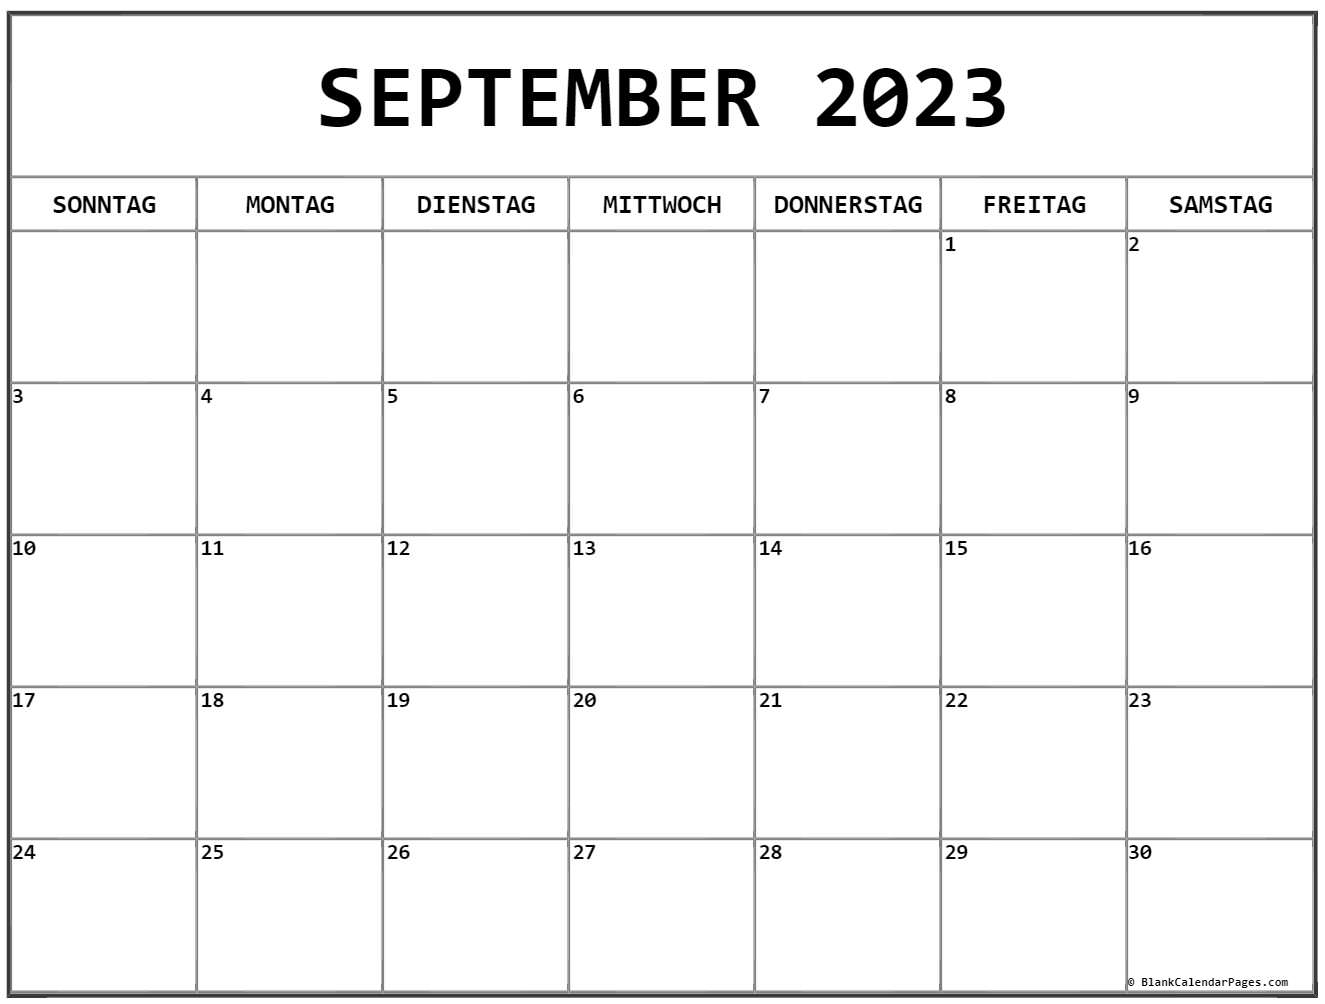 September 2023 kalender auf Deutsch kalender 2023